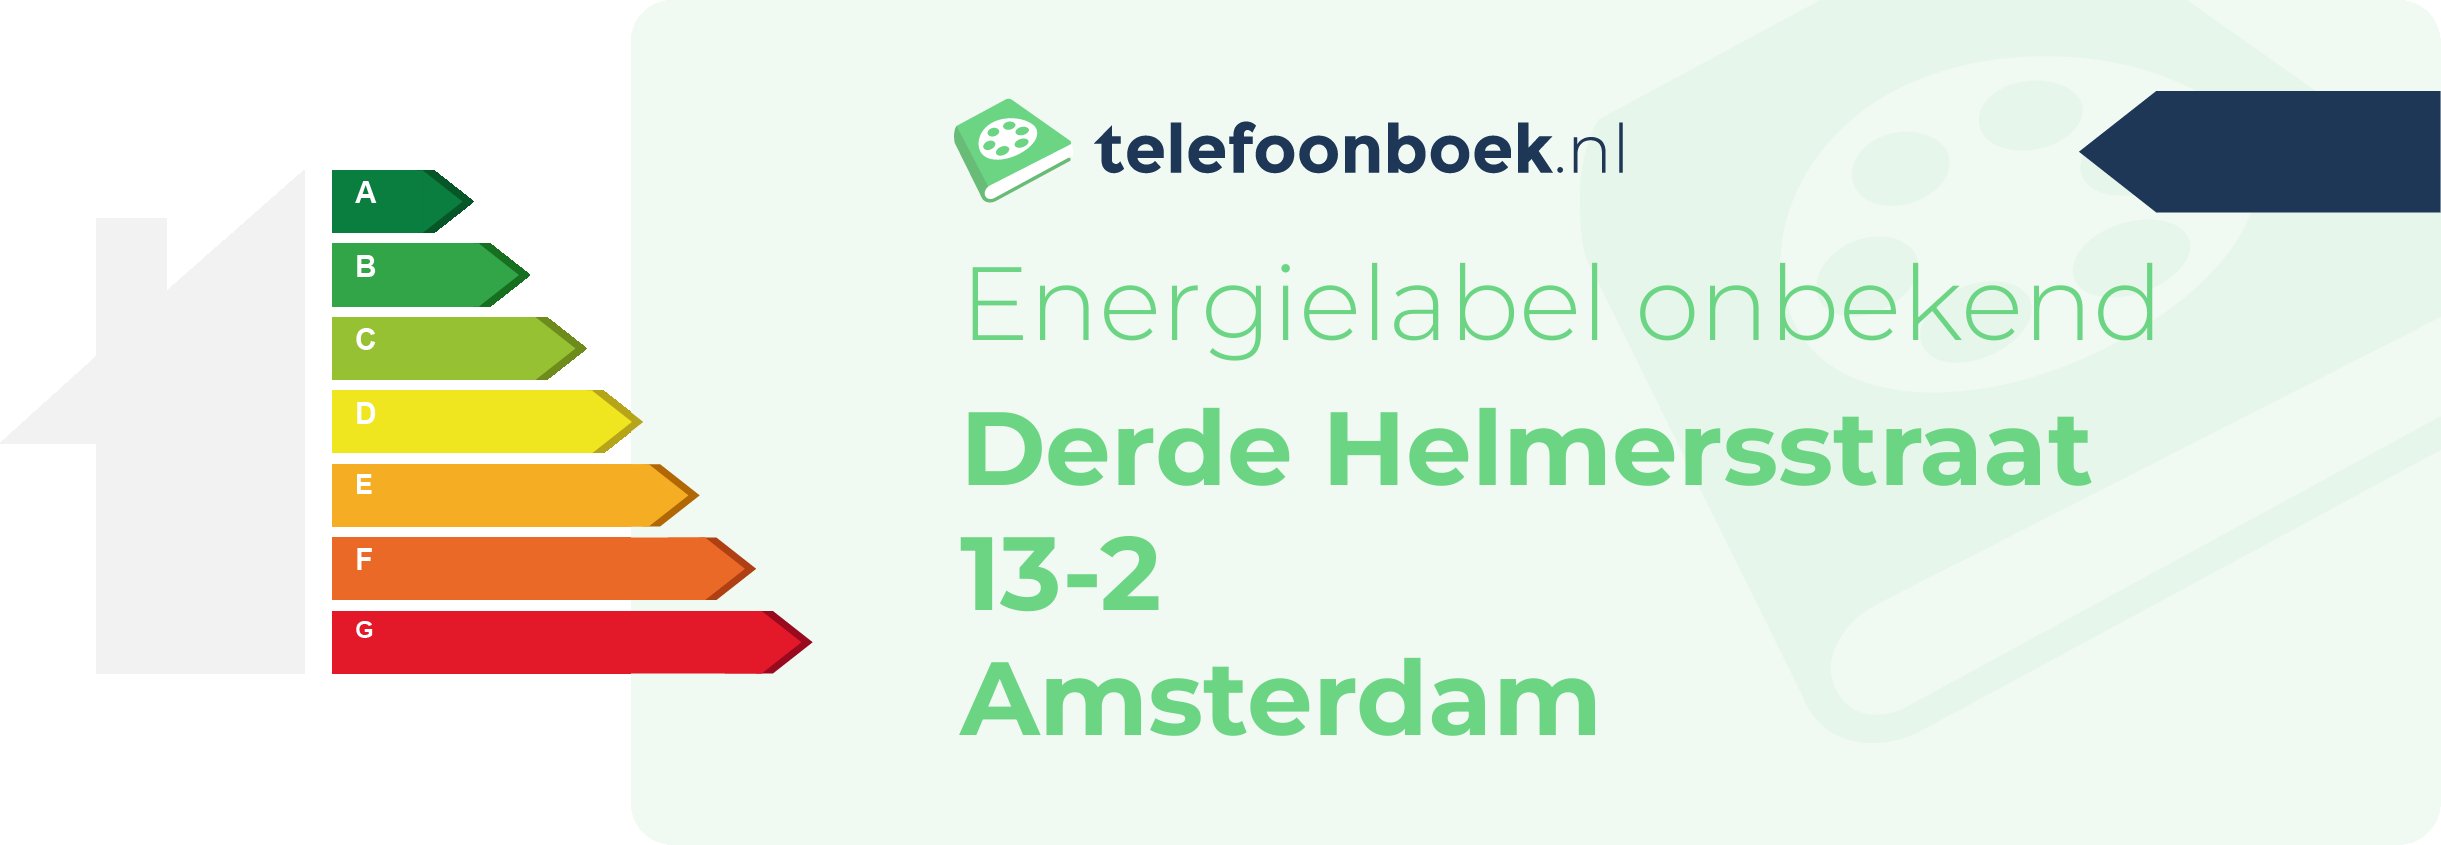 Energielabel Derde Helmersstraat 13-2 Amsterdam